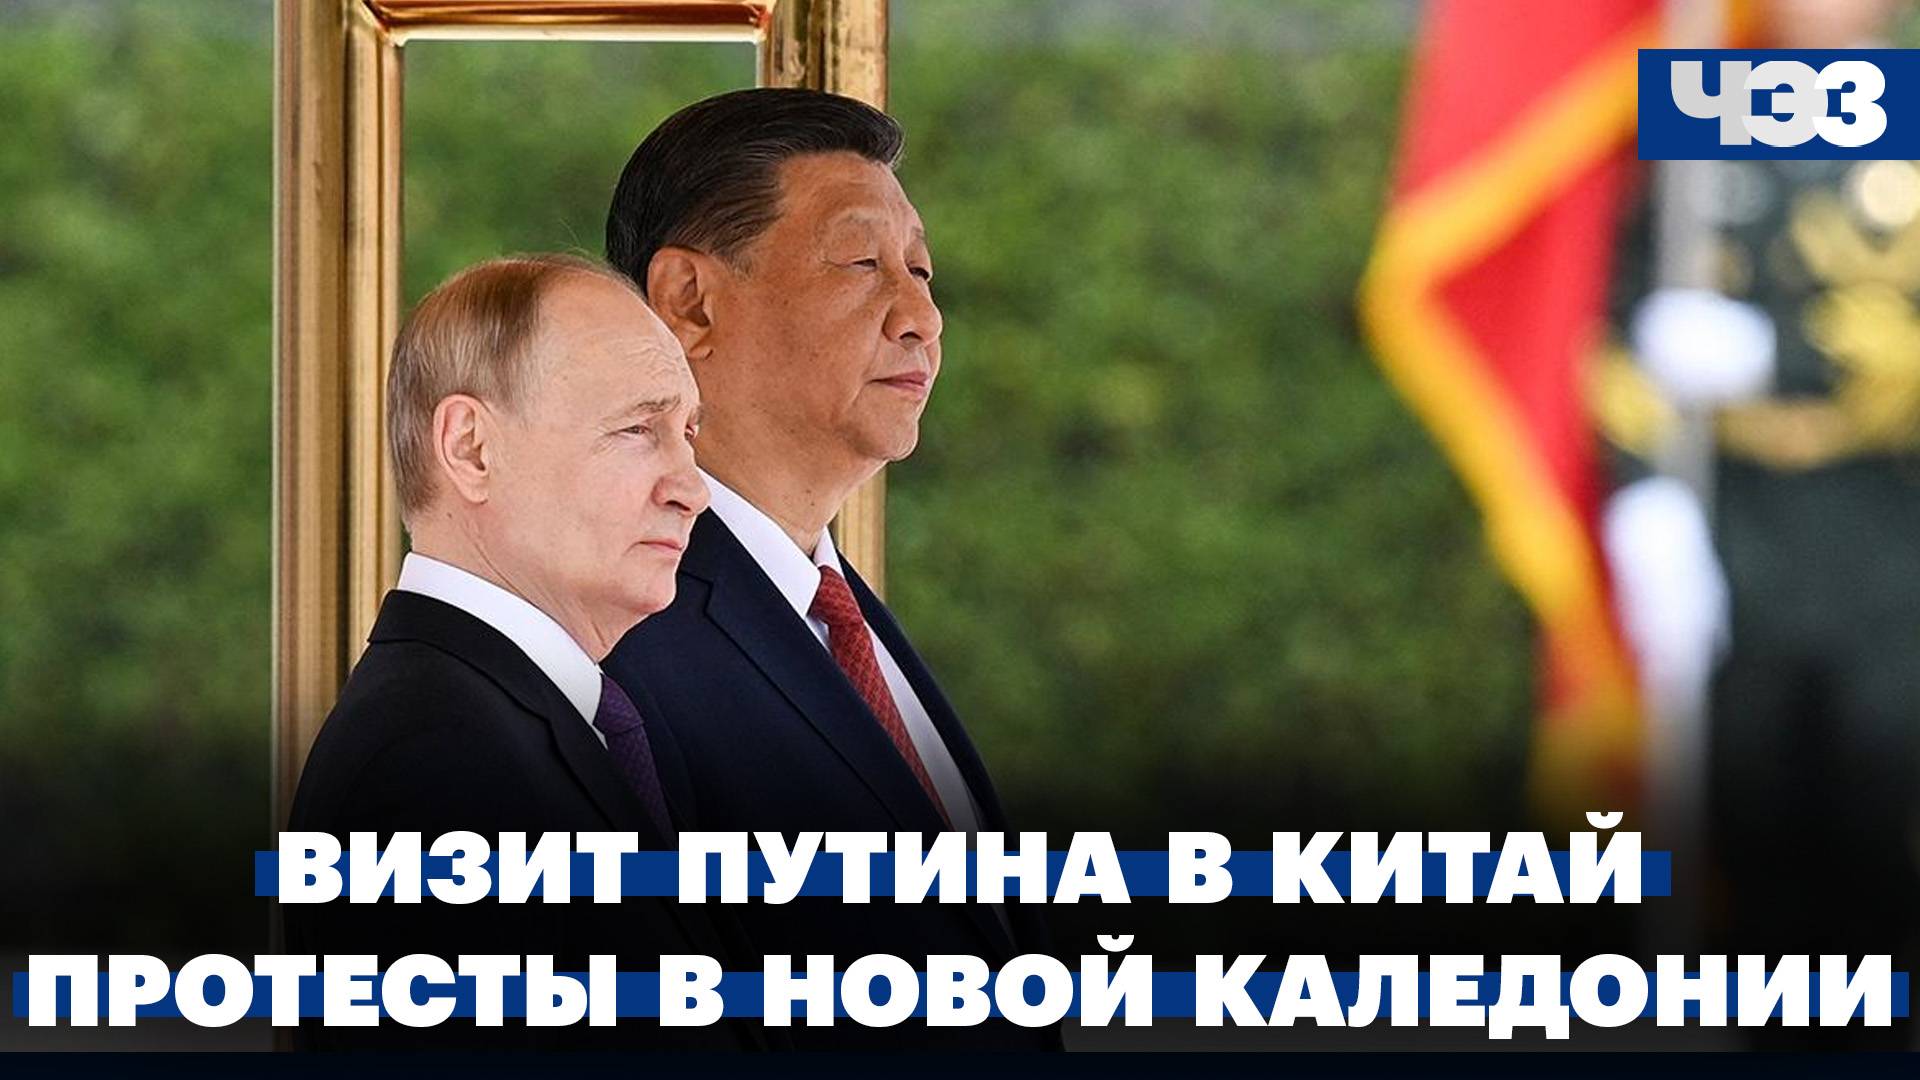 Путин обозначил цели сотрудничества с Китаем. Массовые беспорядки в Новой Каледонии